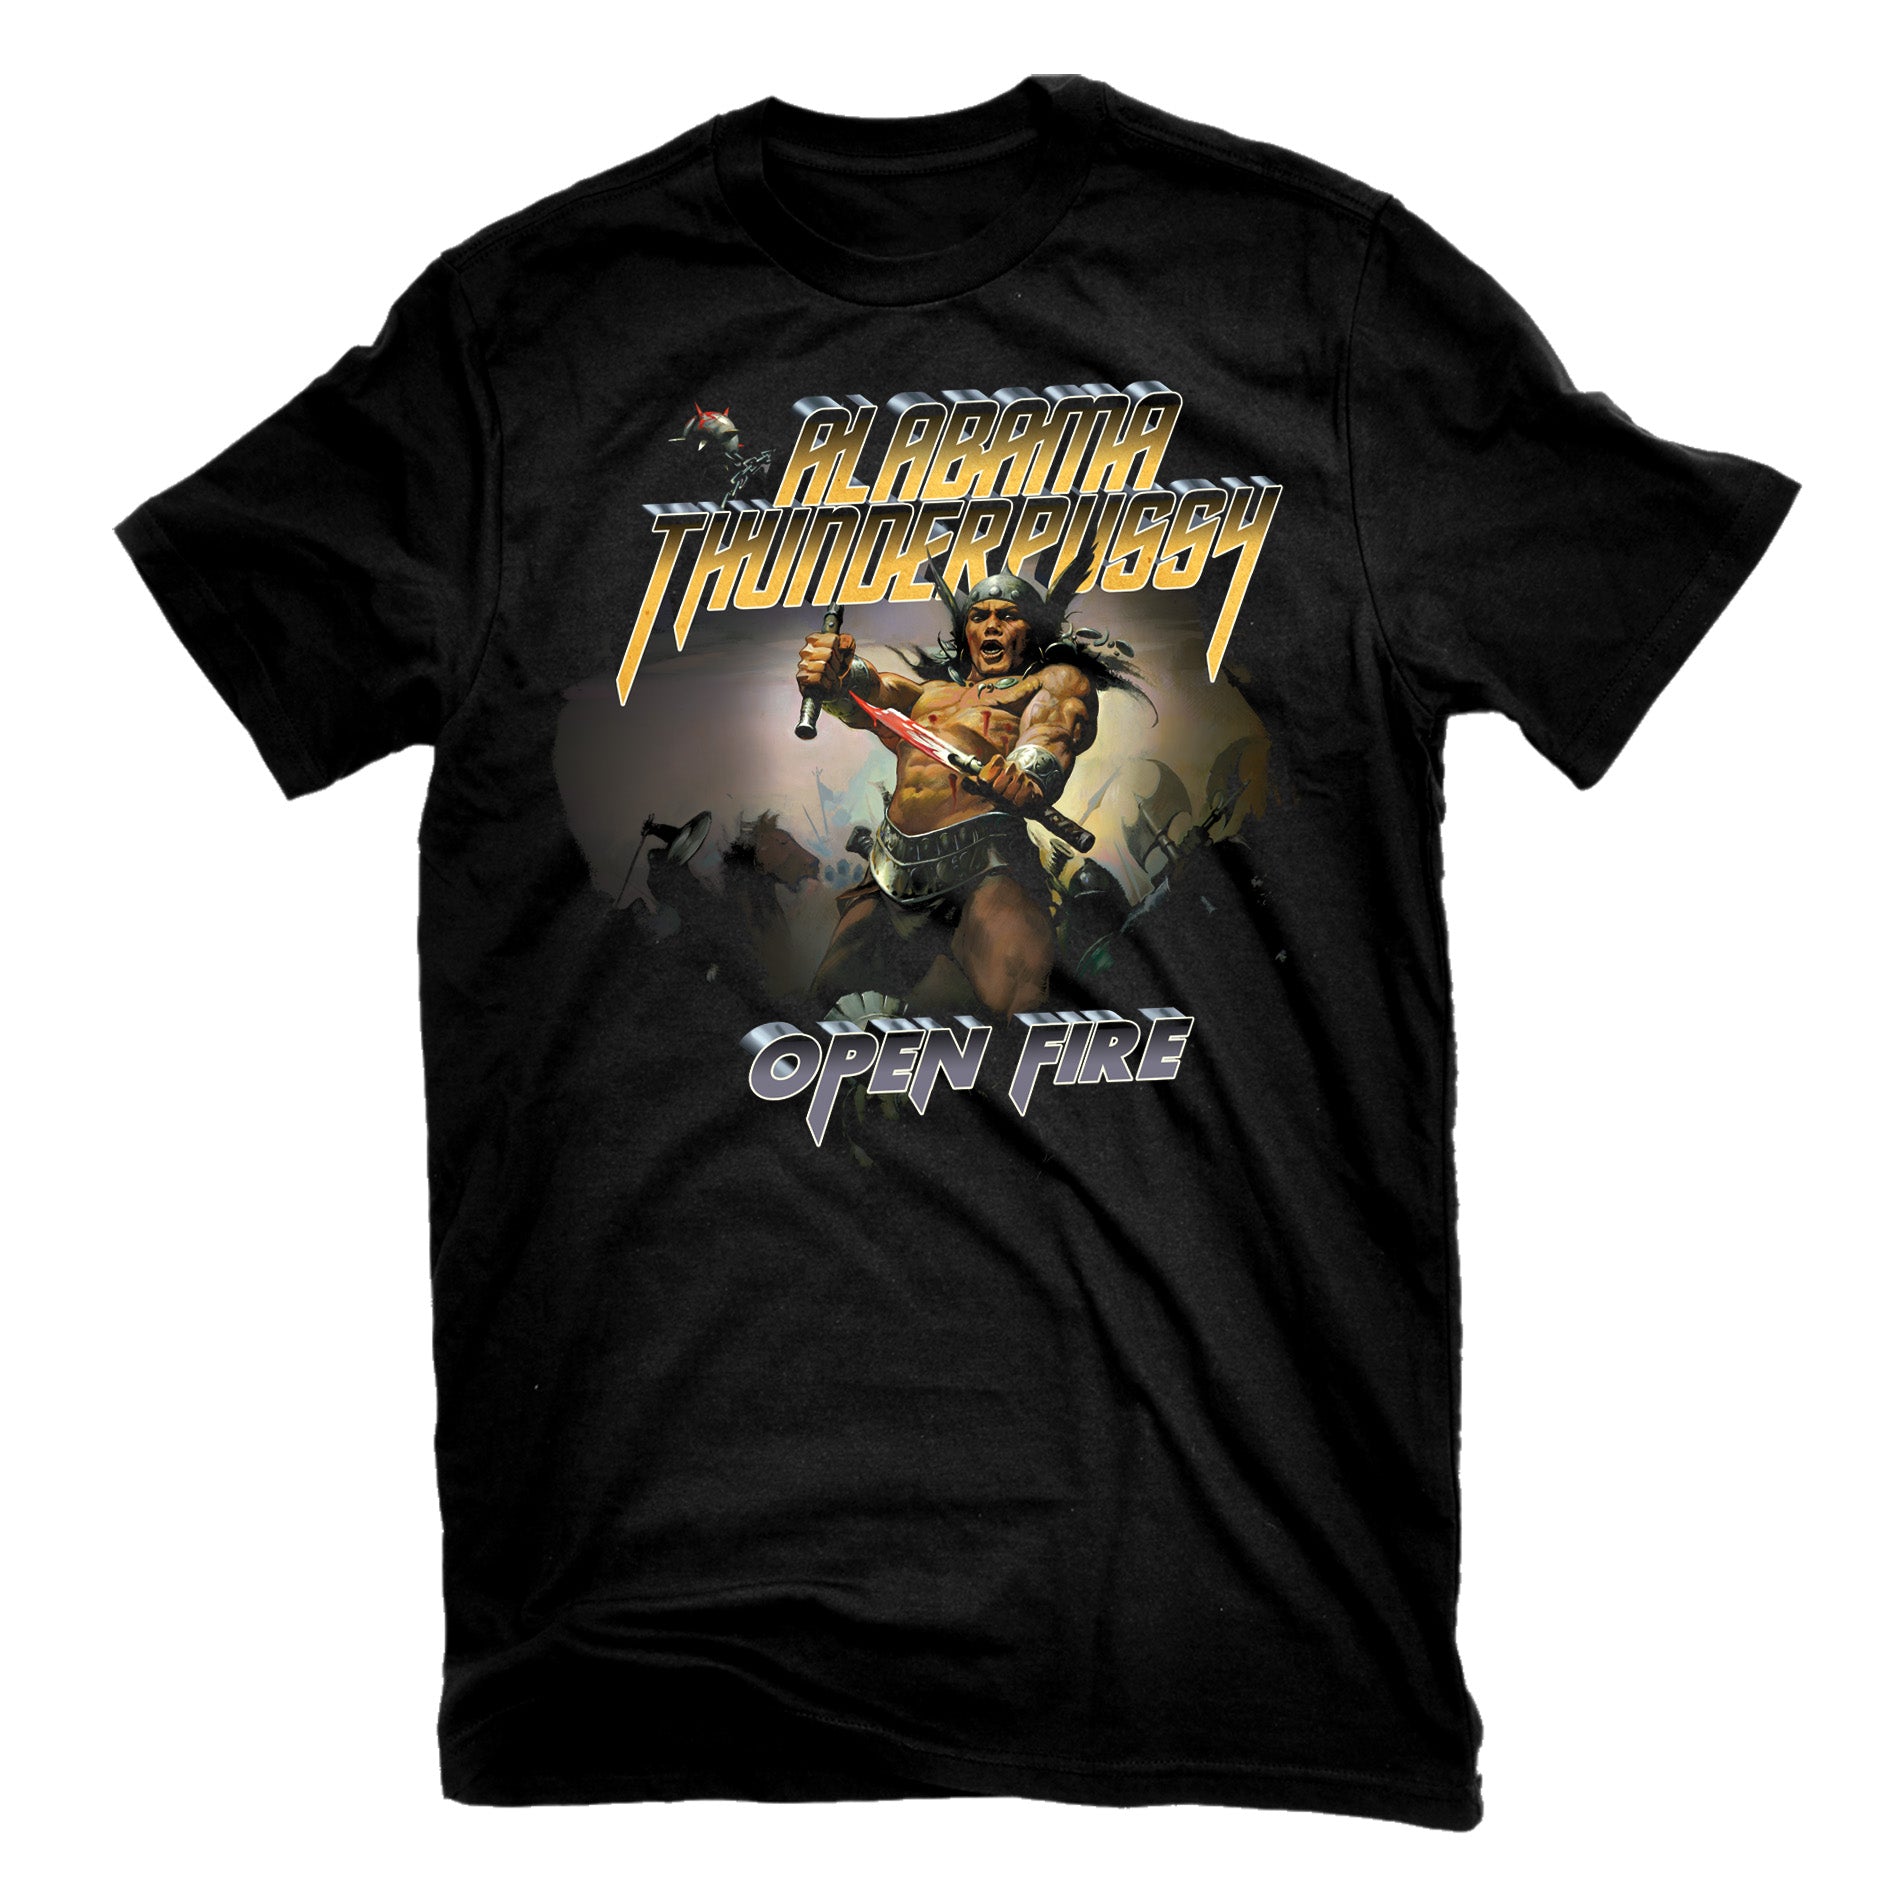 Alabama Thunderpussy "Open Fire" T-Shirt